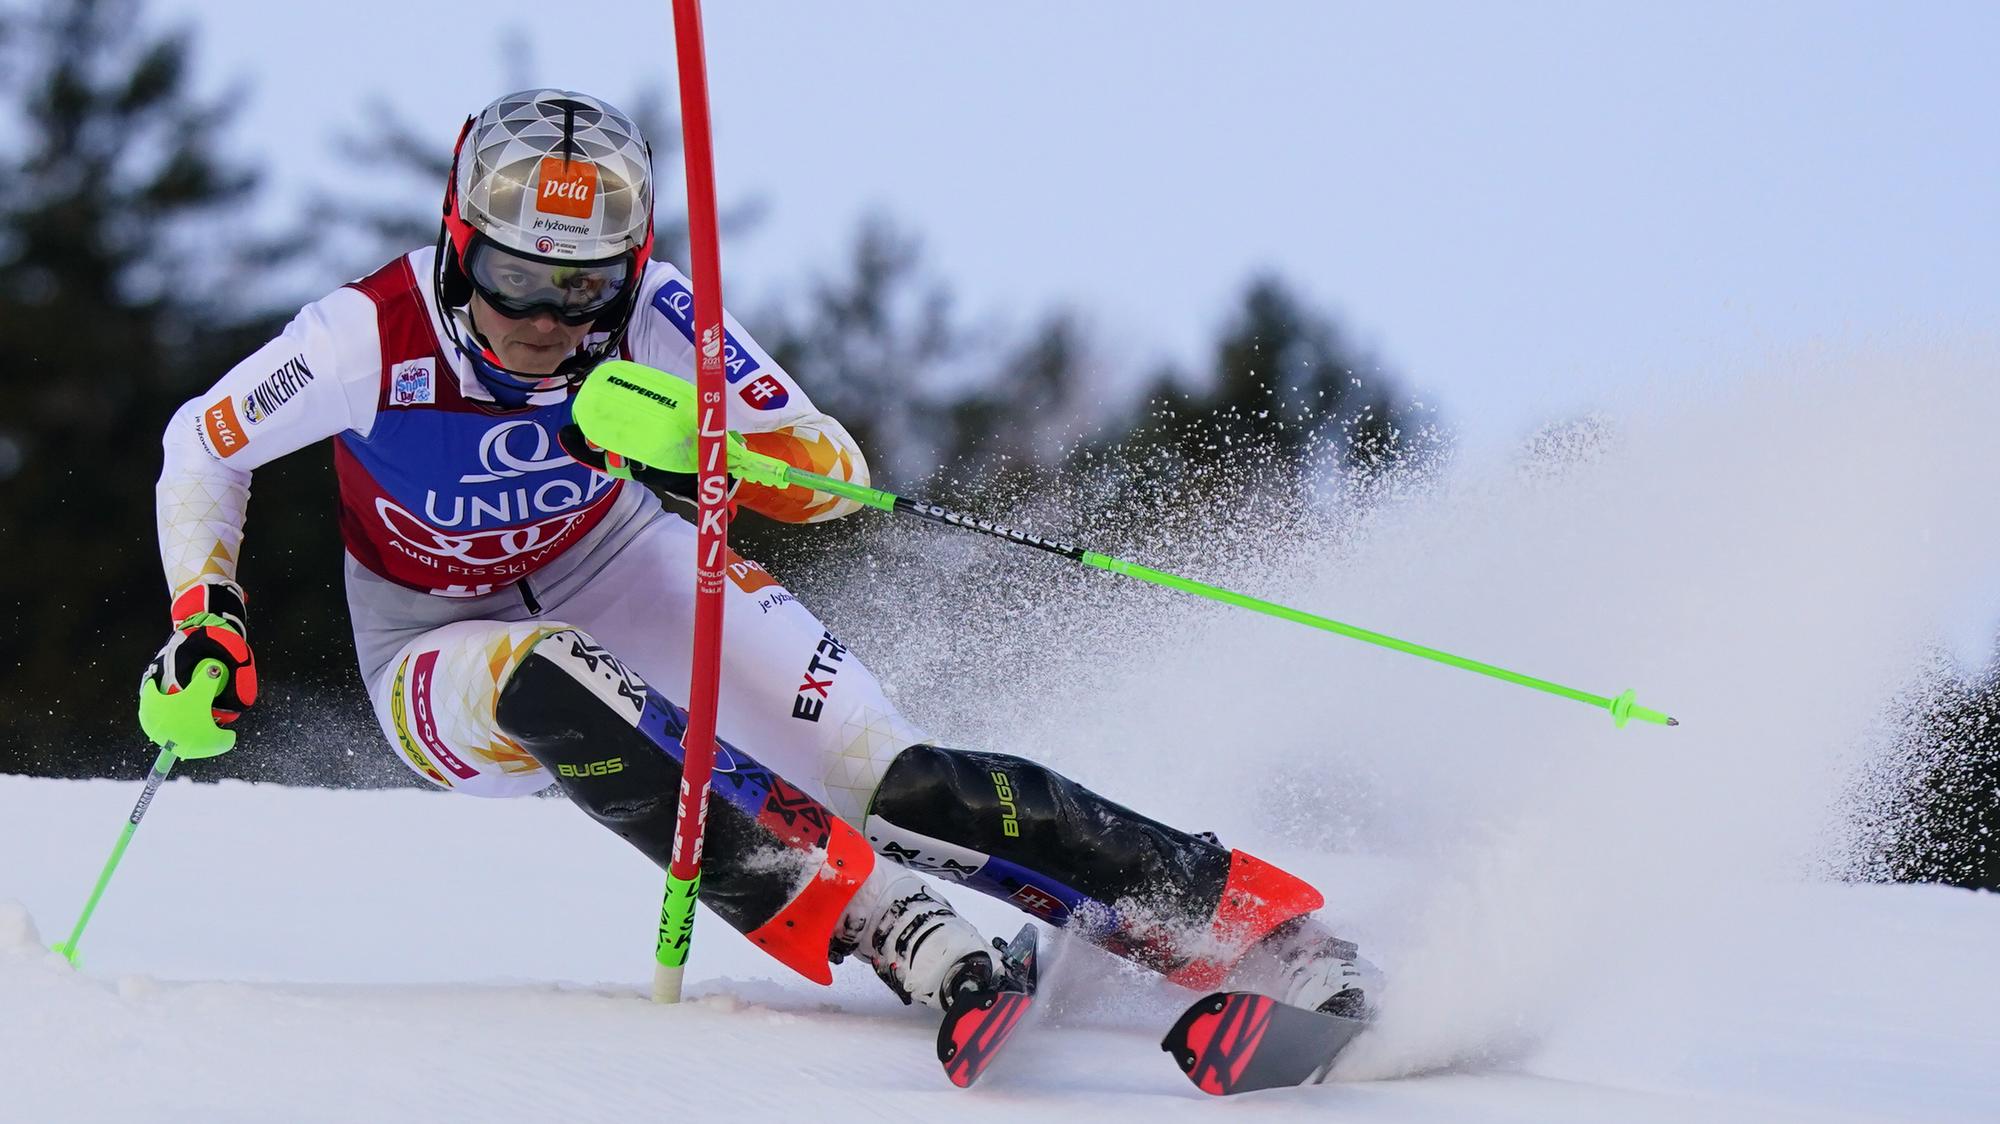 LIVE: Petra Vlhová dnes - 1. kolo (slalom), Záhreb | Šport.sk